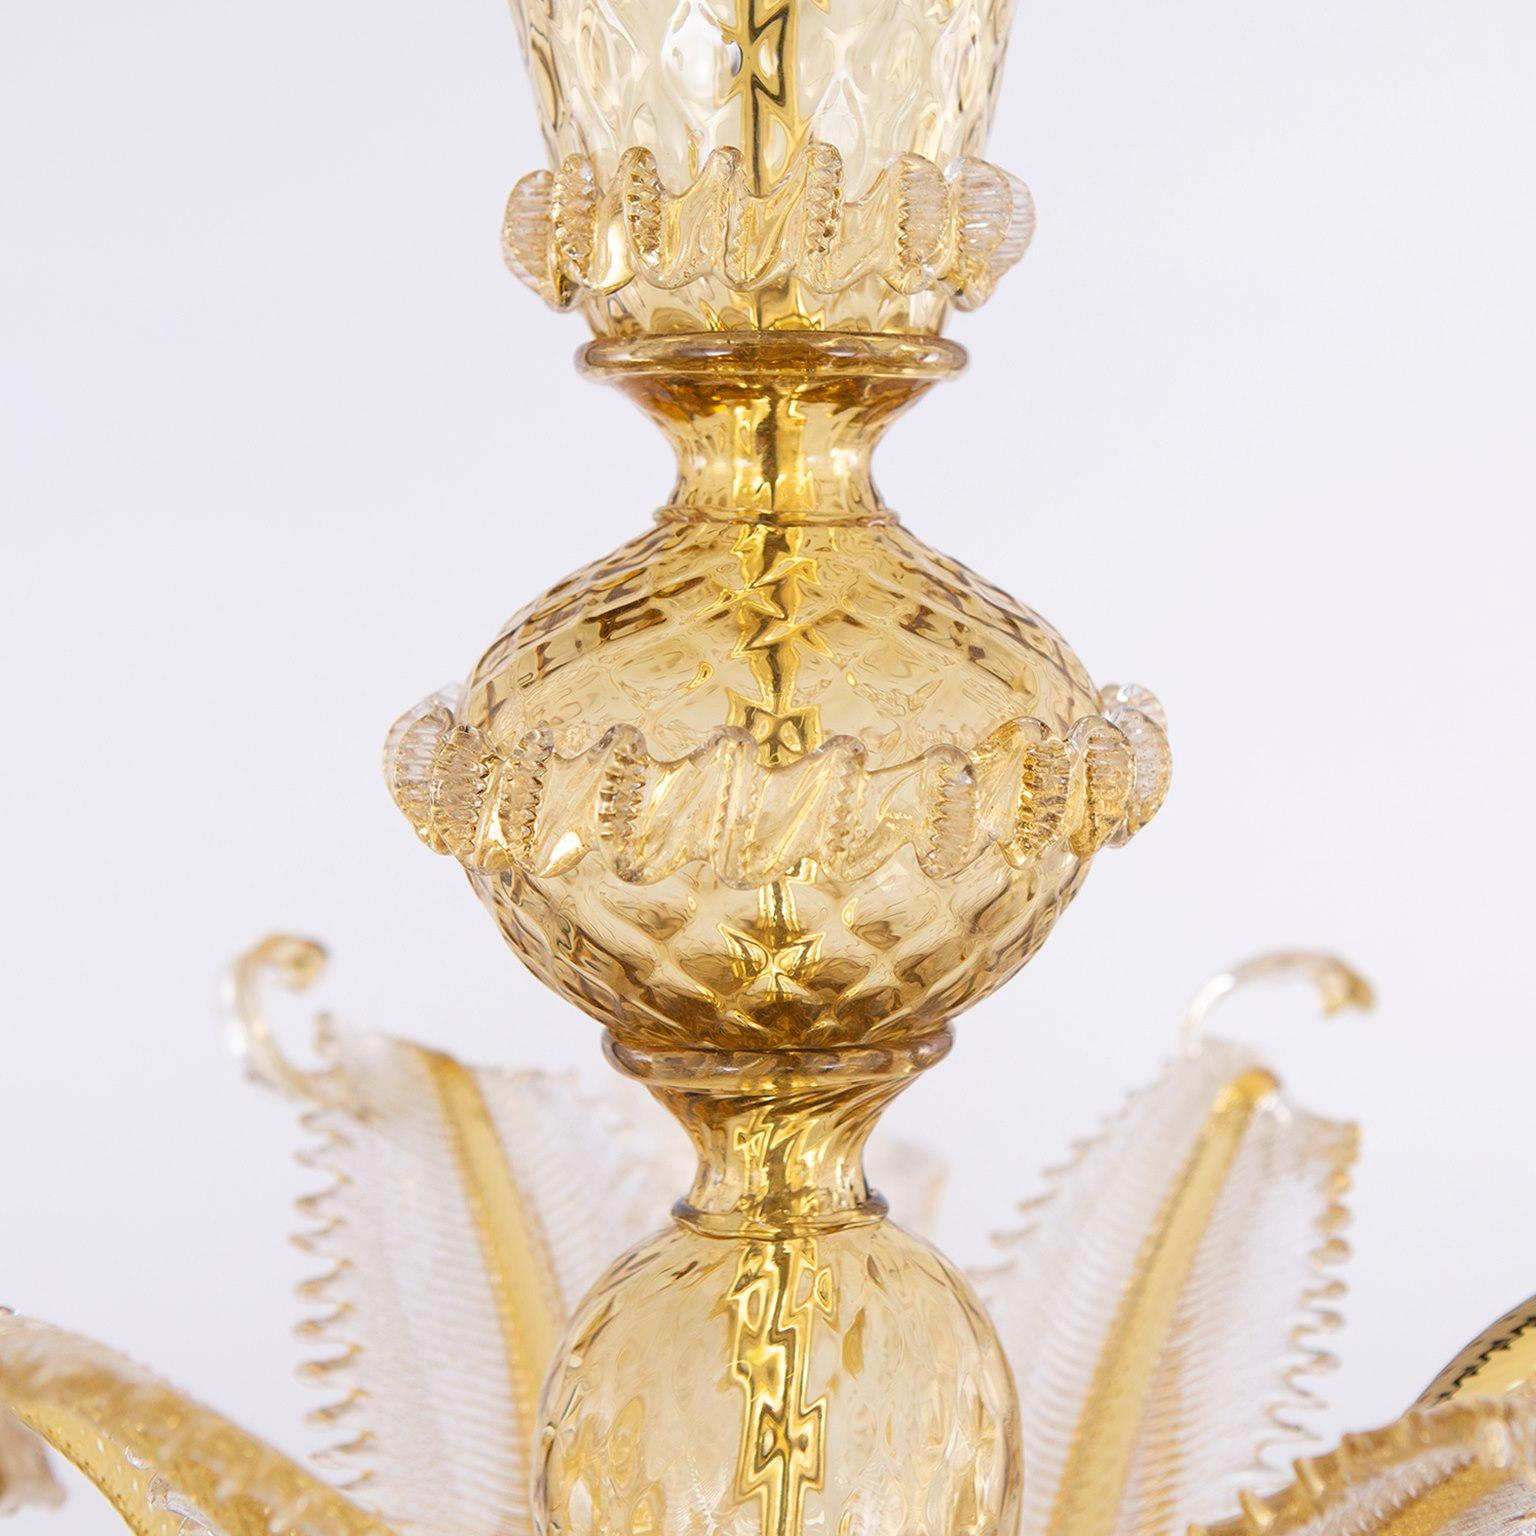 Klassischer 5-armiger Kronleuchter aus Murano-Glas mit klaren und goldenen Details von Multiforme.
Der klassische Murano-Glaslüster, wie er in der kollektiven Vorstellung ist. Wie viele andere Kronleuchter aus unseren Kollektionen wurde auch